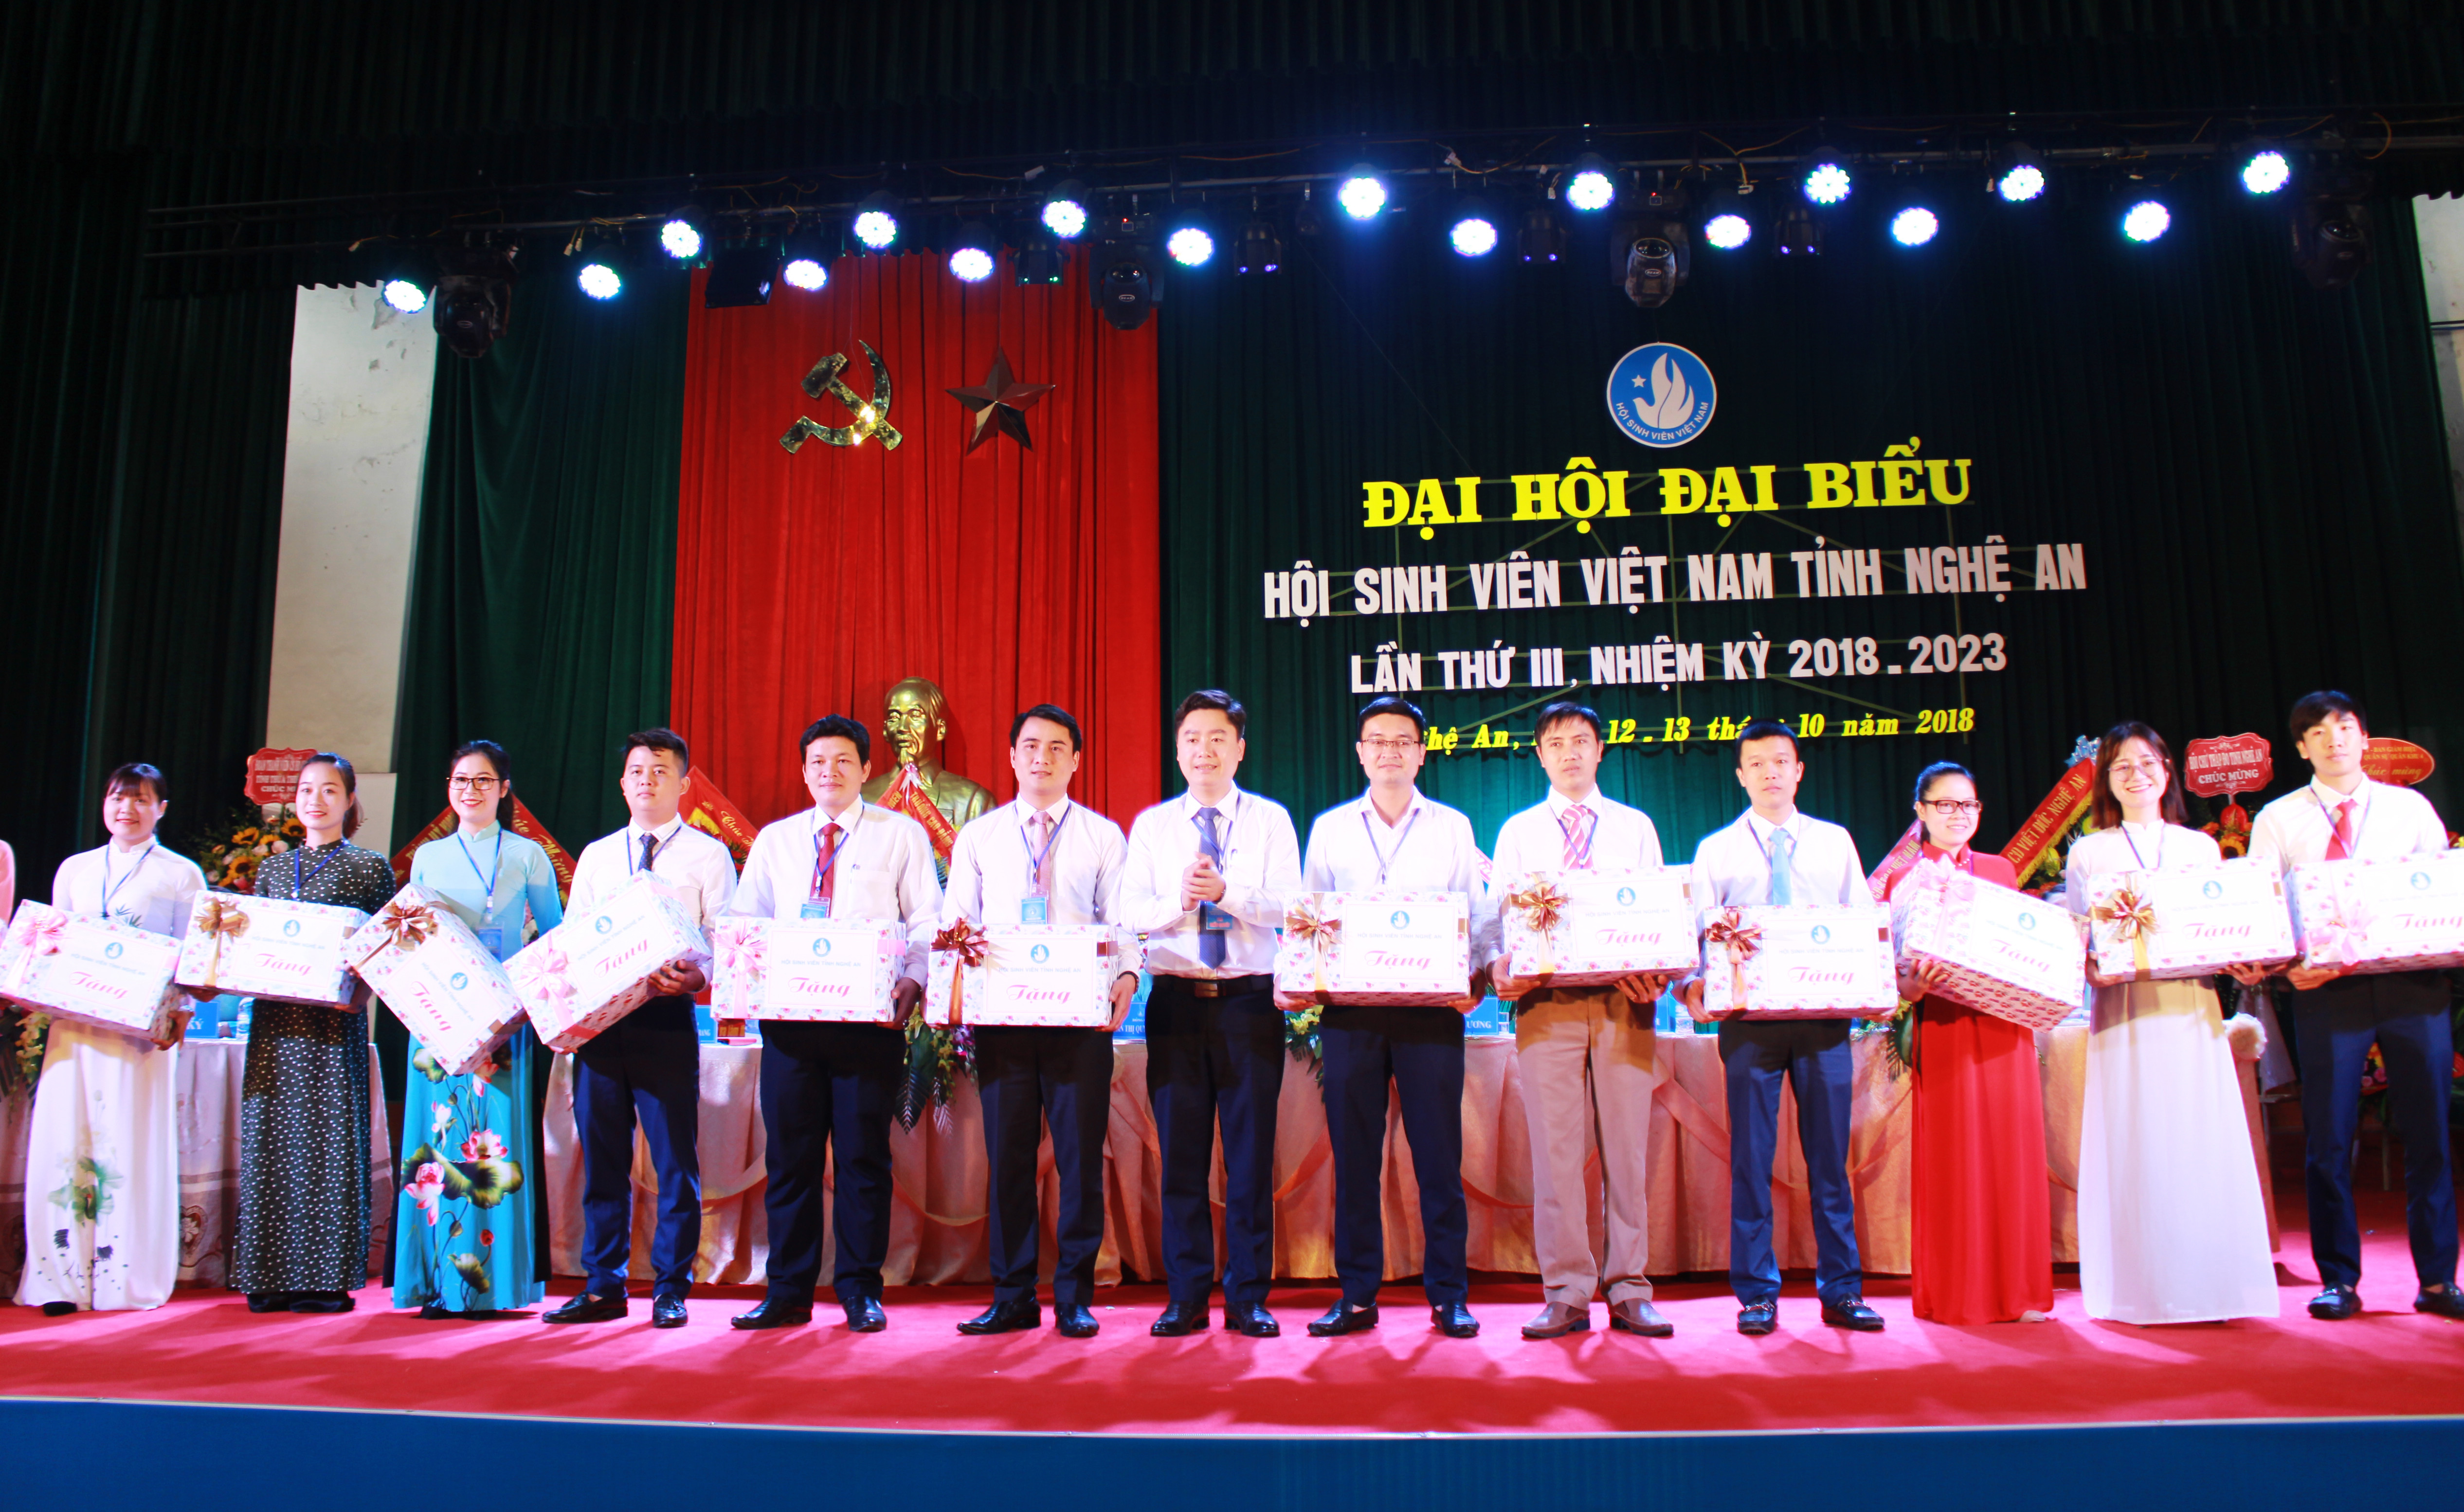 Chia tay, tặng quà các đồng chí Ủy viên Ban Chấp hành Hội Sinh viên tỉnh Nghệ An khóa II không tái cử. Ảnh: Phương Thúy